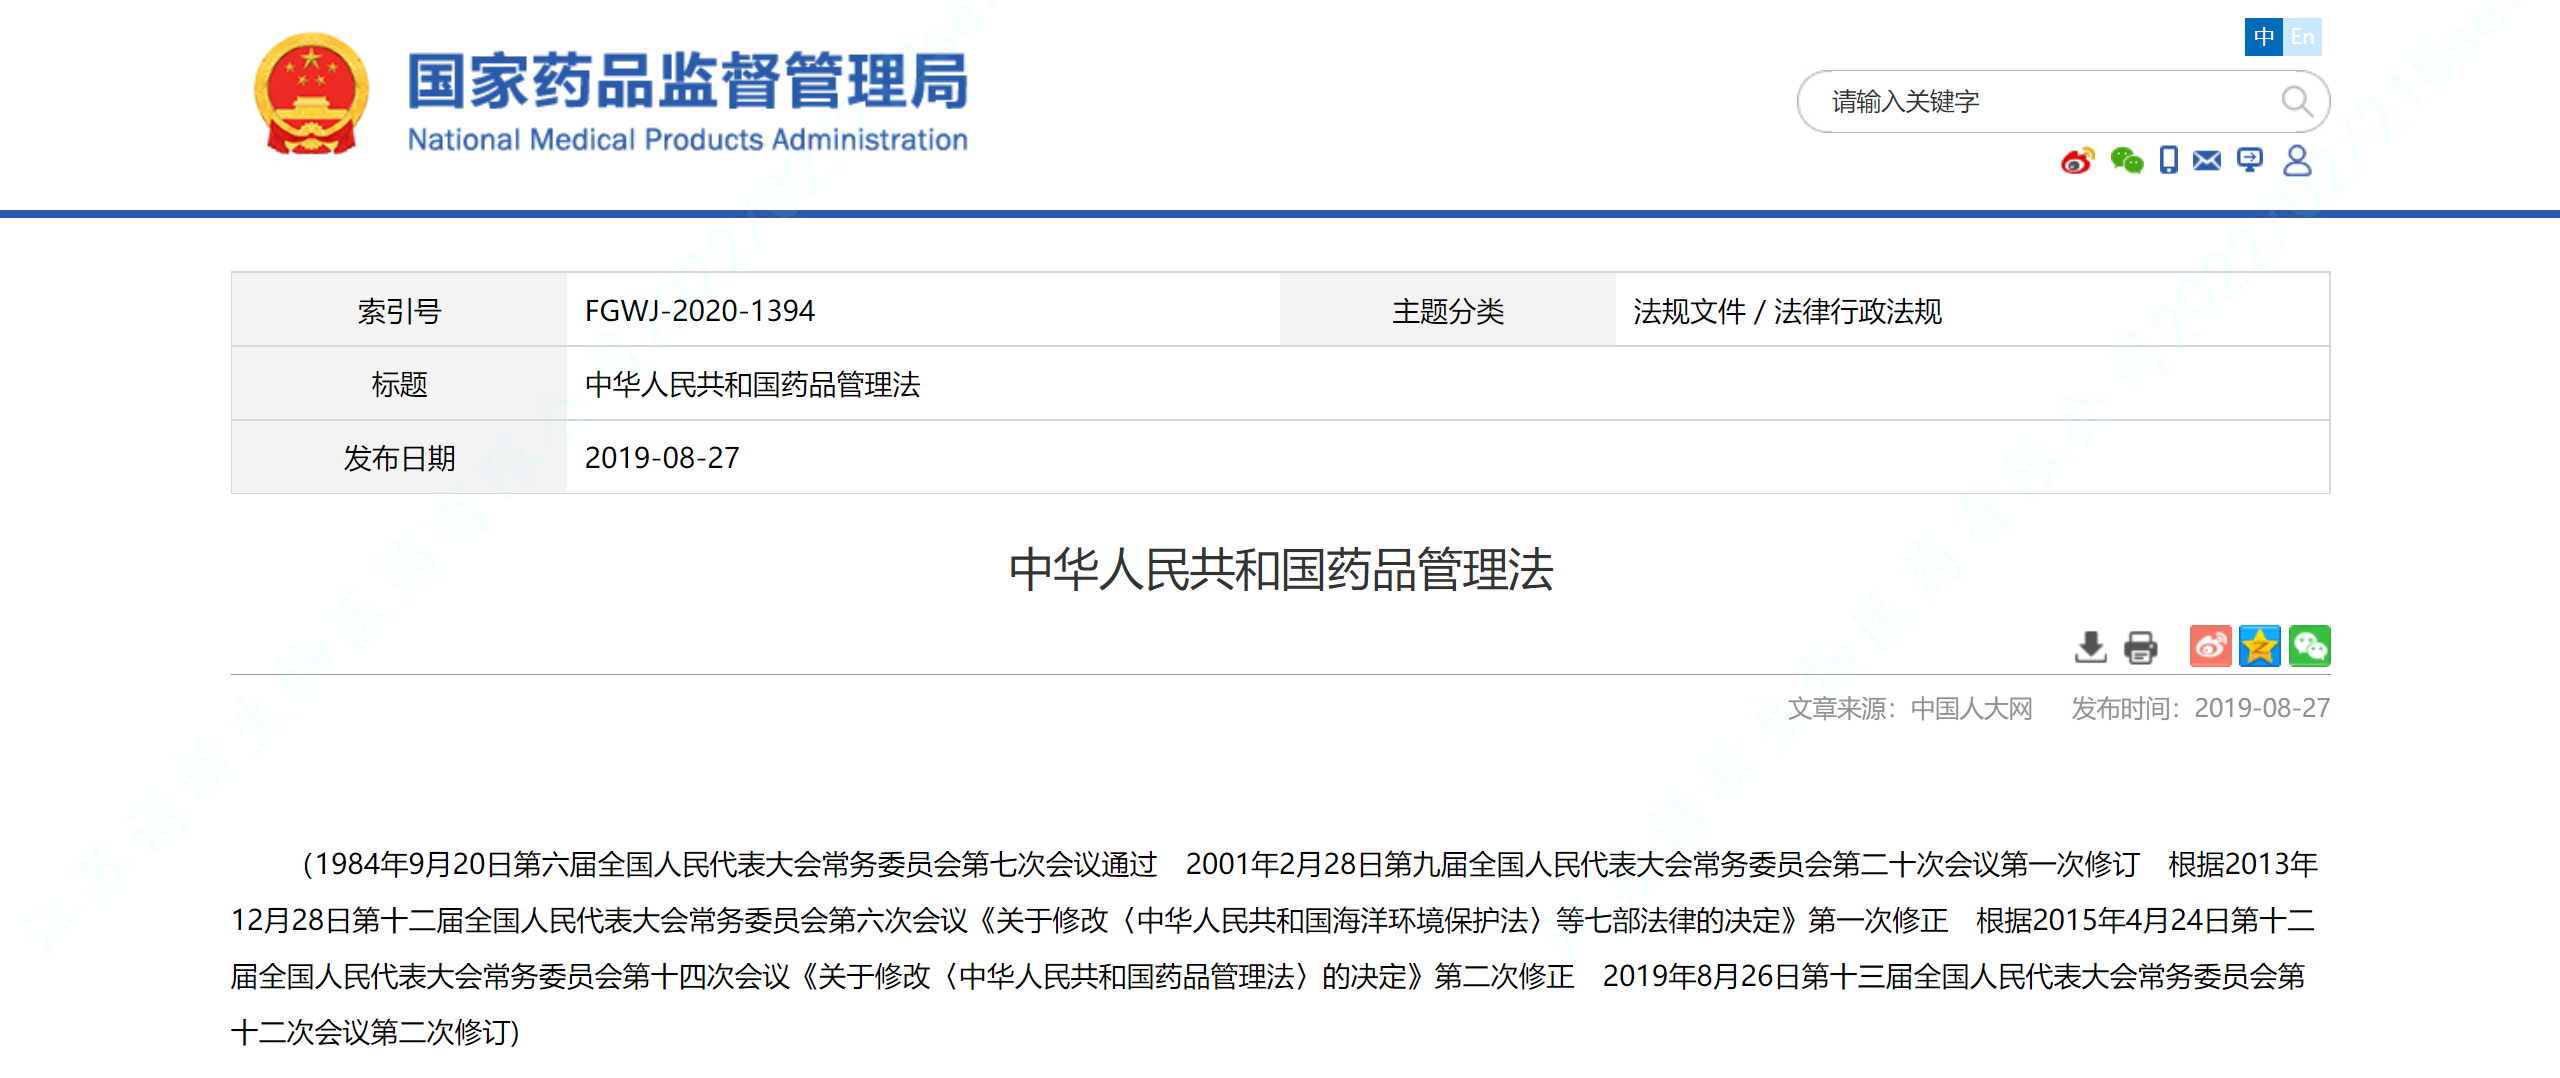 新修订的《中华人民共和国药品管理法》全文来了